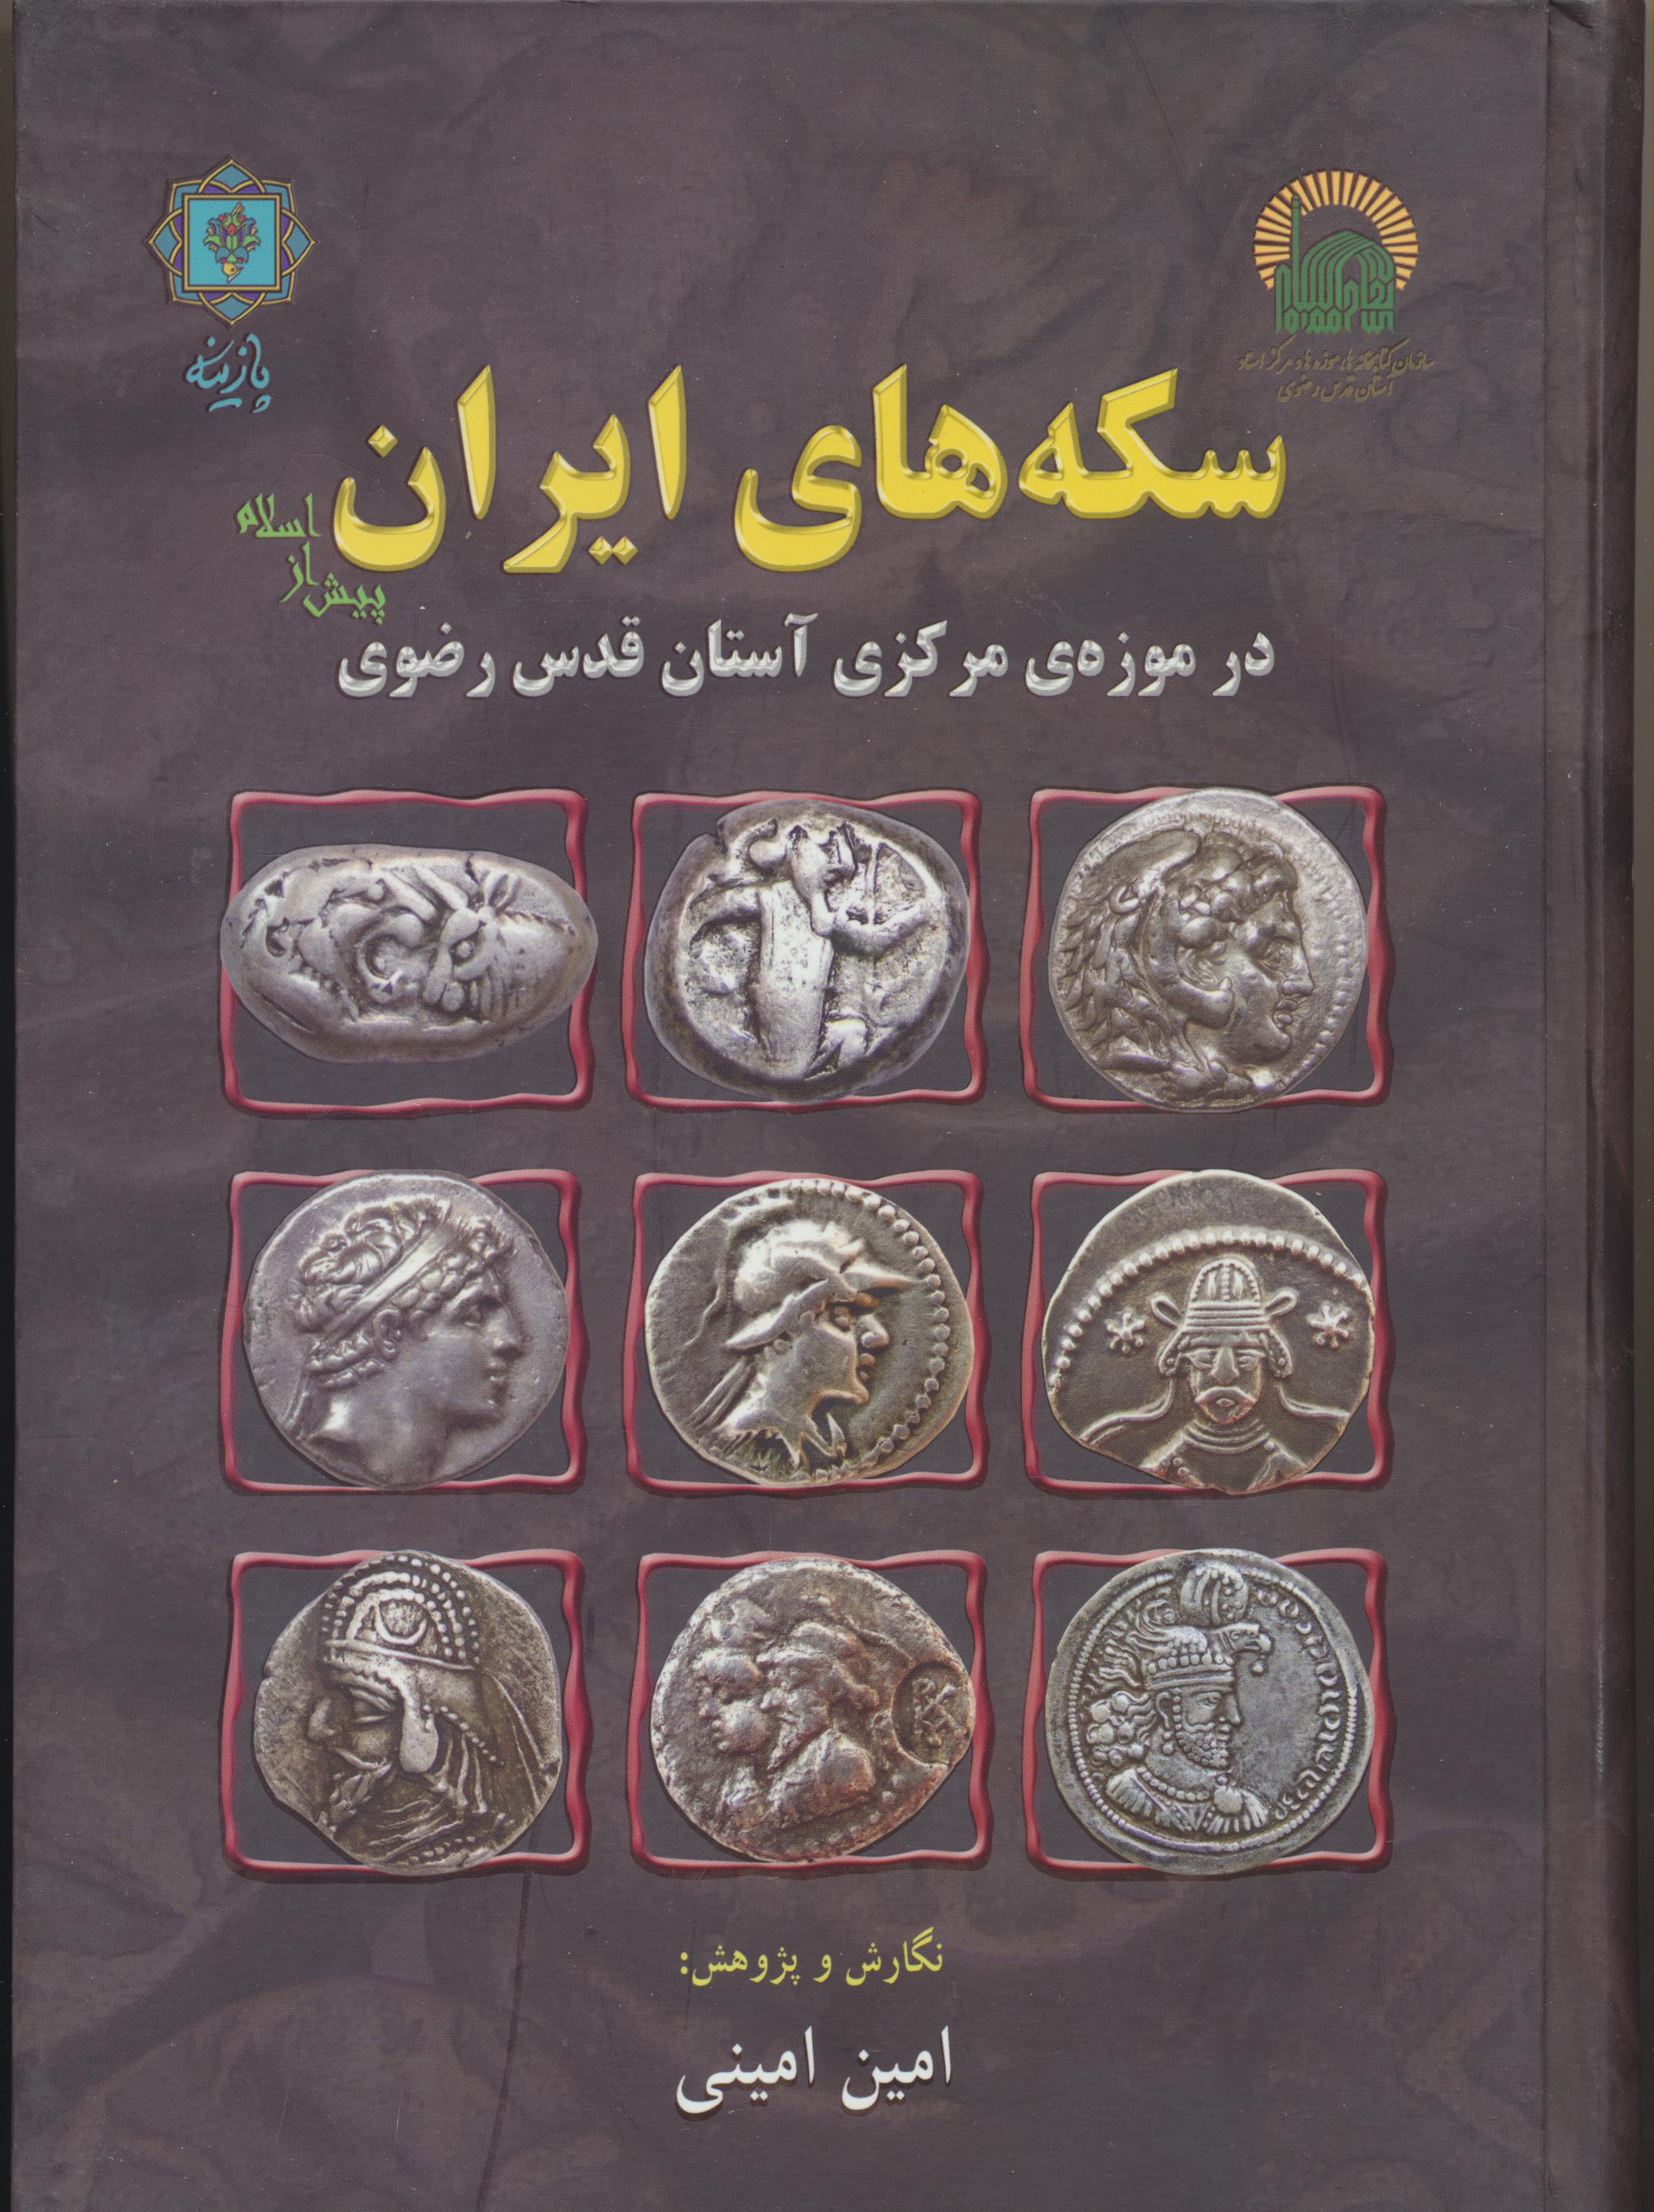 سکه های ایران پیش از اسلام در موزه ی مرکزی آستان قدس رضوی